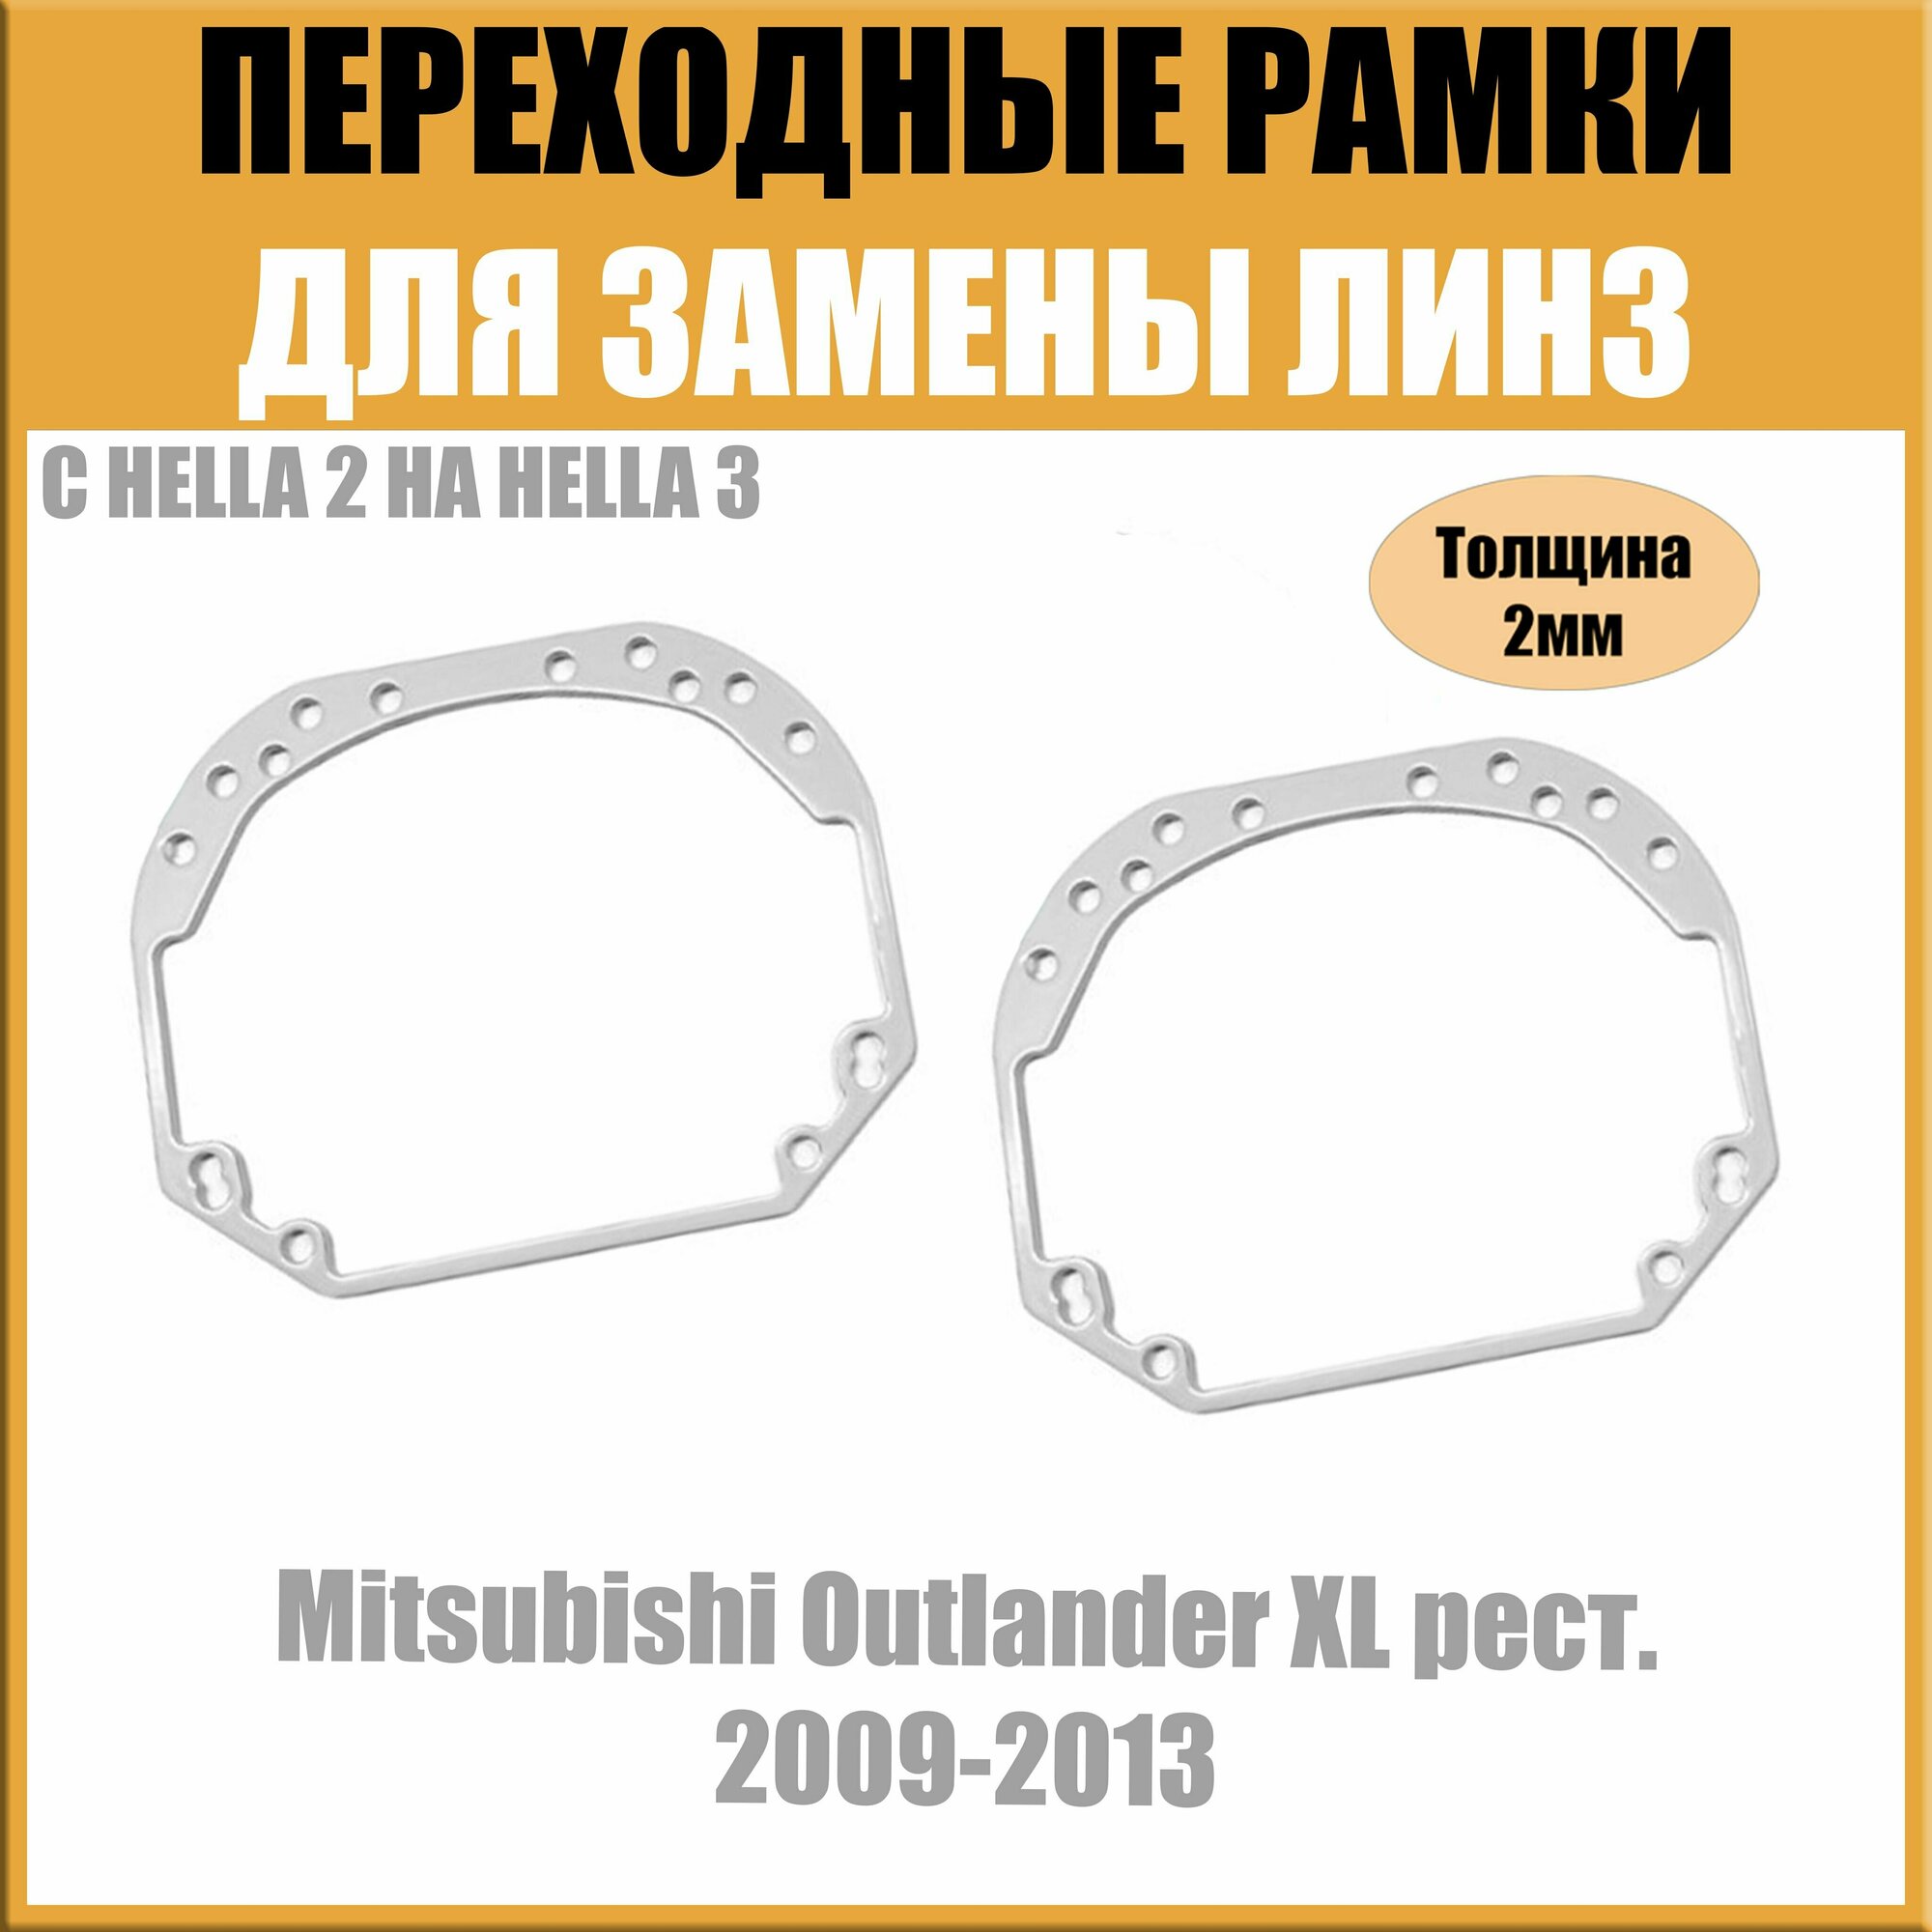 Переходные рамки для линз №1 на Mitsubishi Outlander XL рест. 2009-2013 под модуль Hella 3R/Hella 3 (Комплект 2шт)